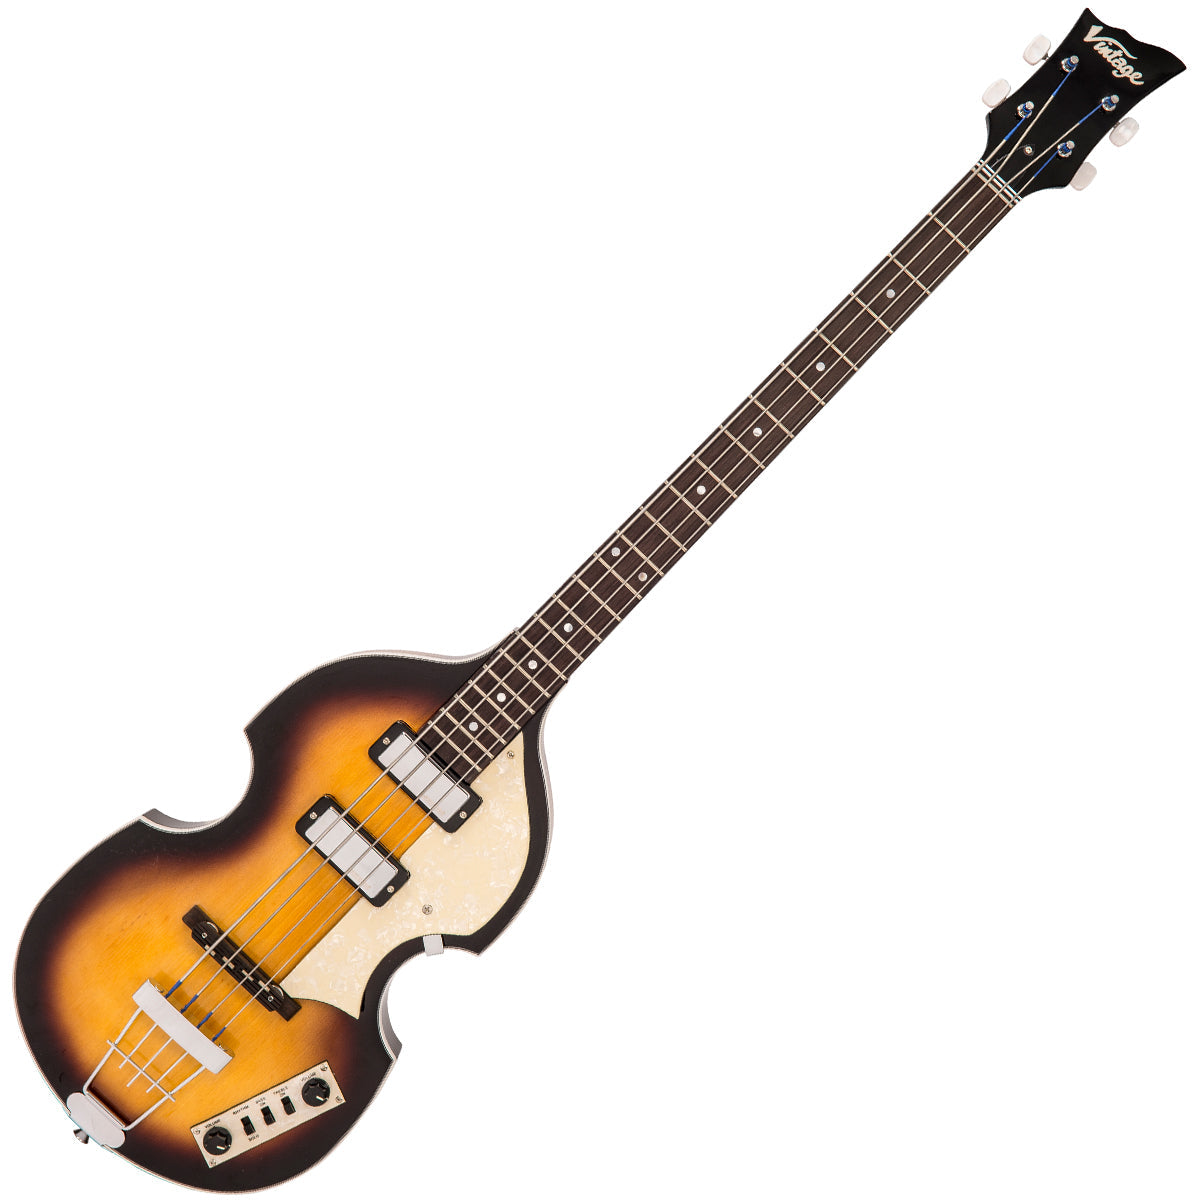 Vintage ReIssued Violin Bass ~ Antique Sunburst, Bass Guitar for sale at Richards Guitars.